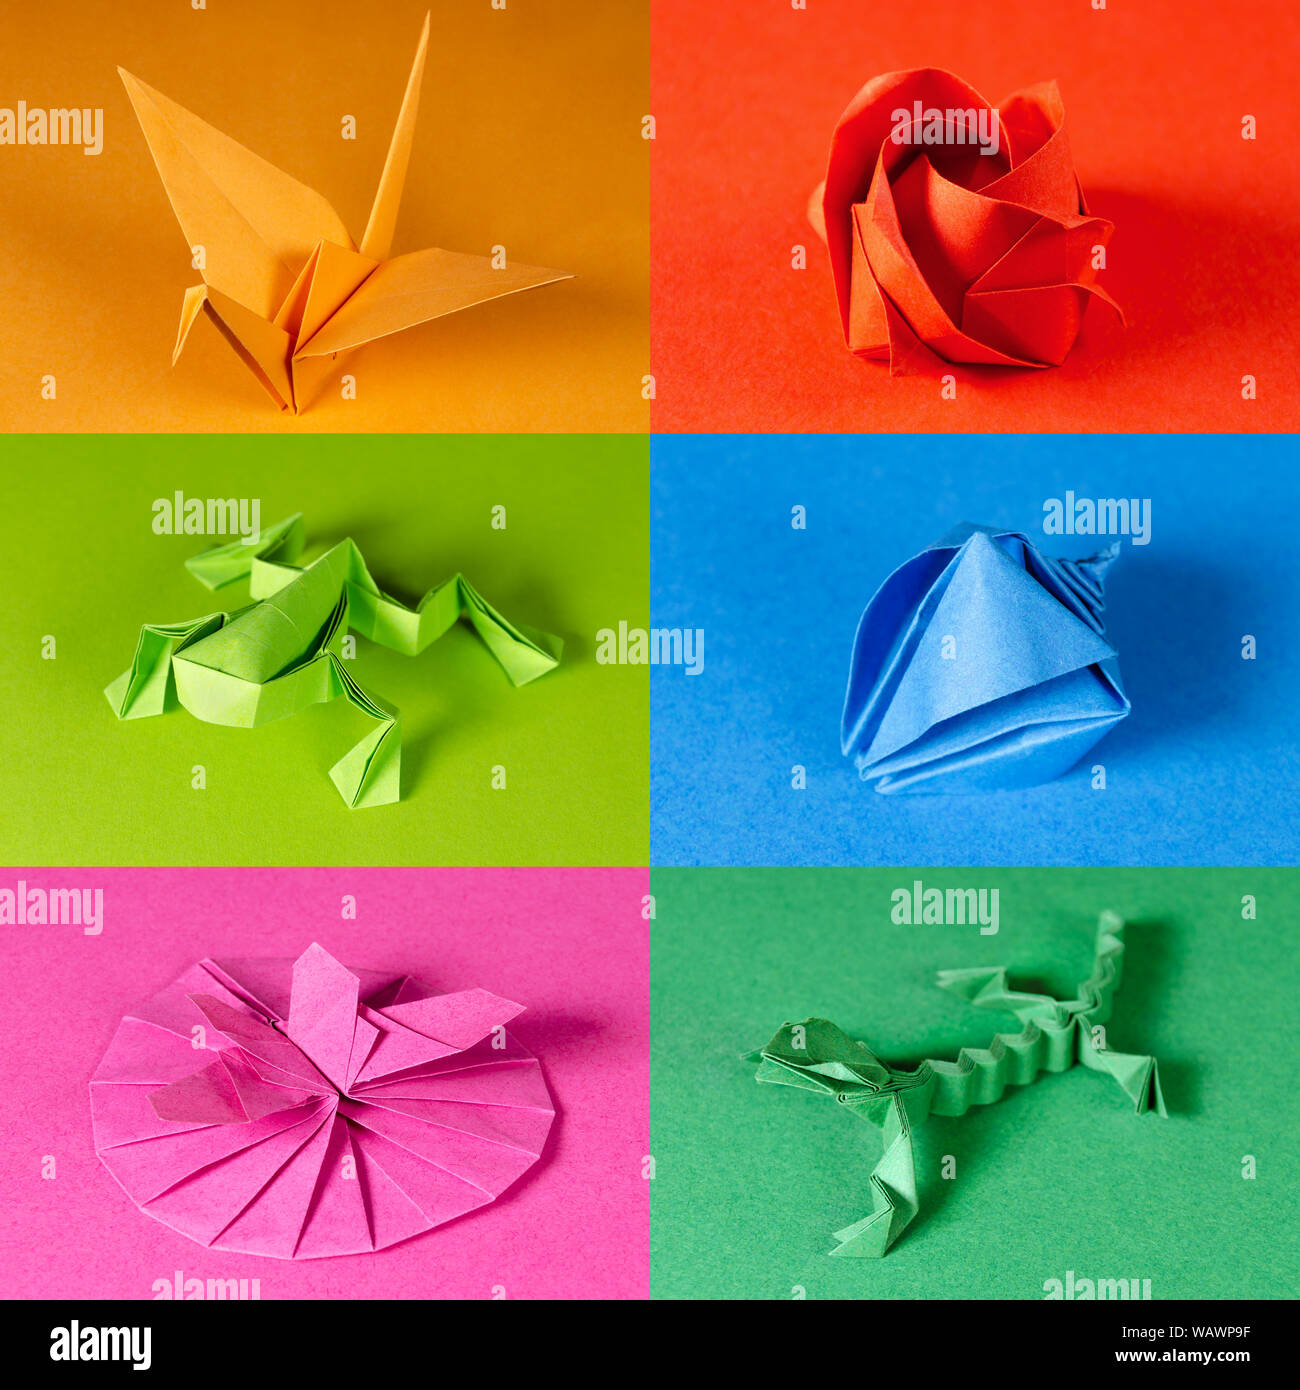 Farbige Origami Papier Figuren Auf Farbigen Hintergrunden Kran Rose Frosch Muschel Schmetterling Auf Blute Und Eidechse Japanisches Papier Falten Art Stockfotografie Alamy